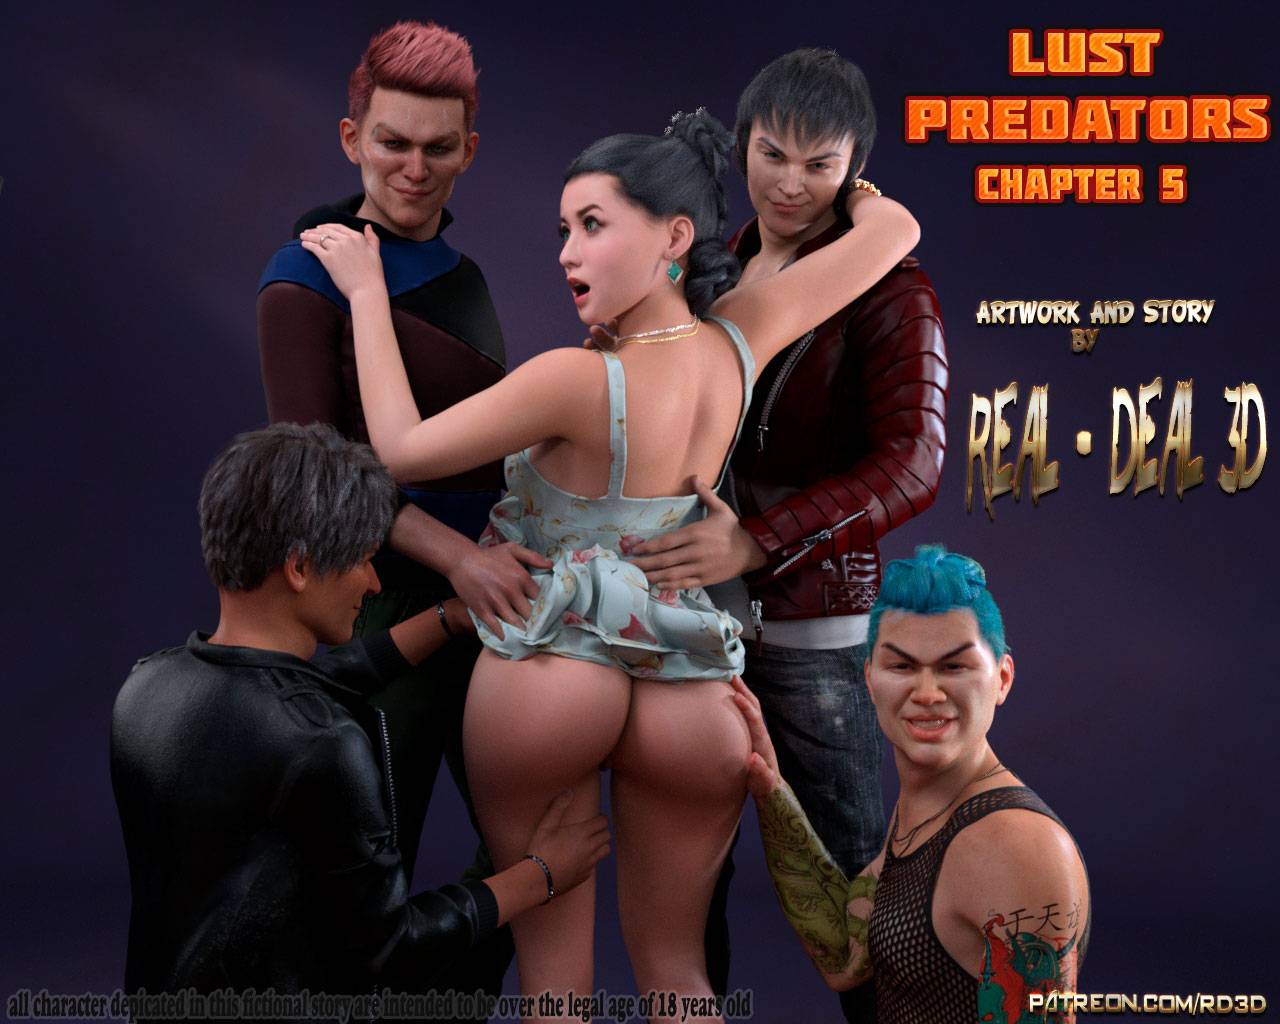 Lust Predators Real-Deal 3D - 5 